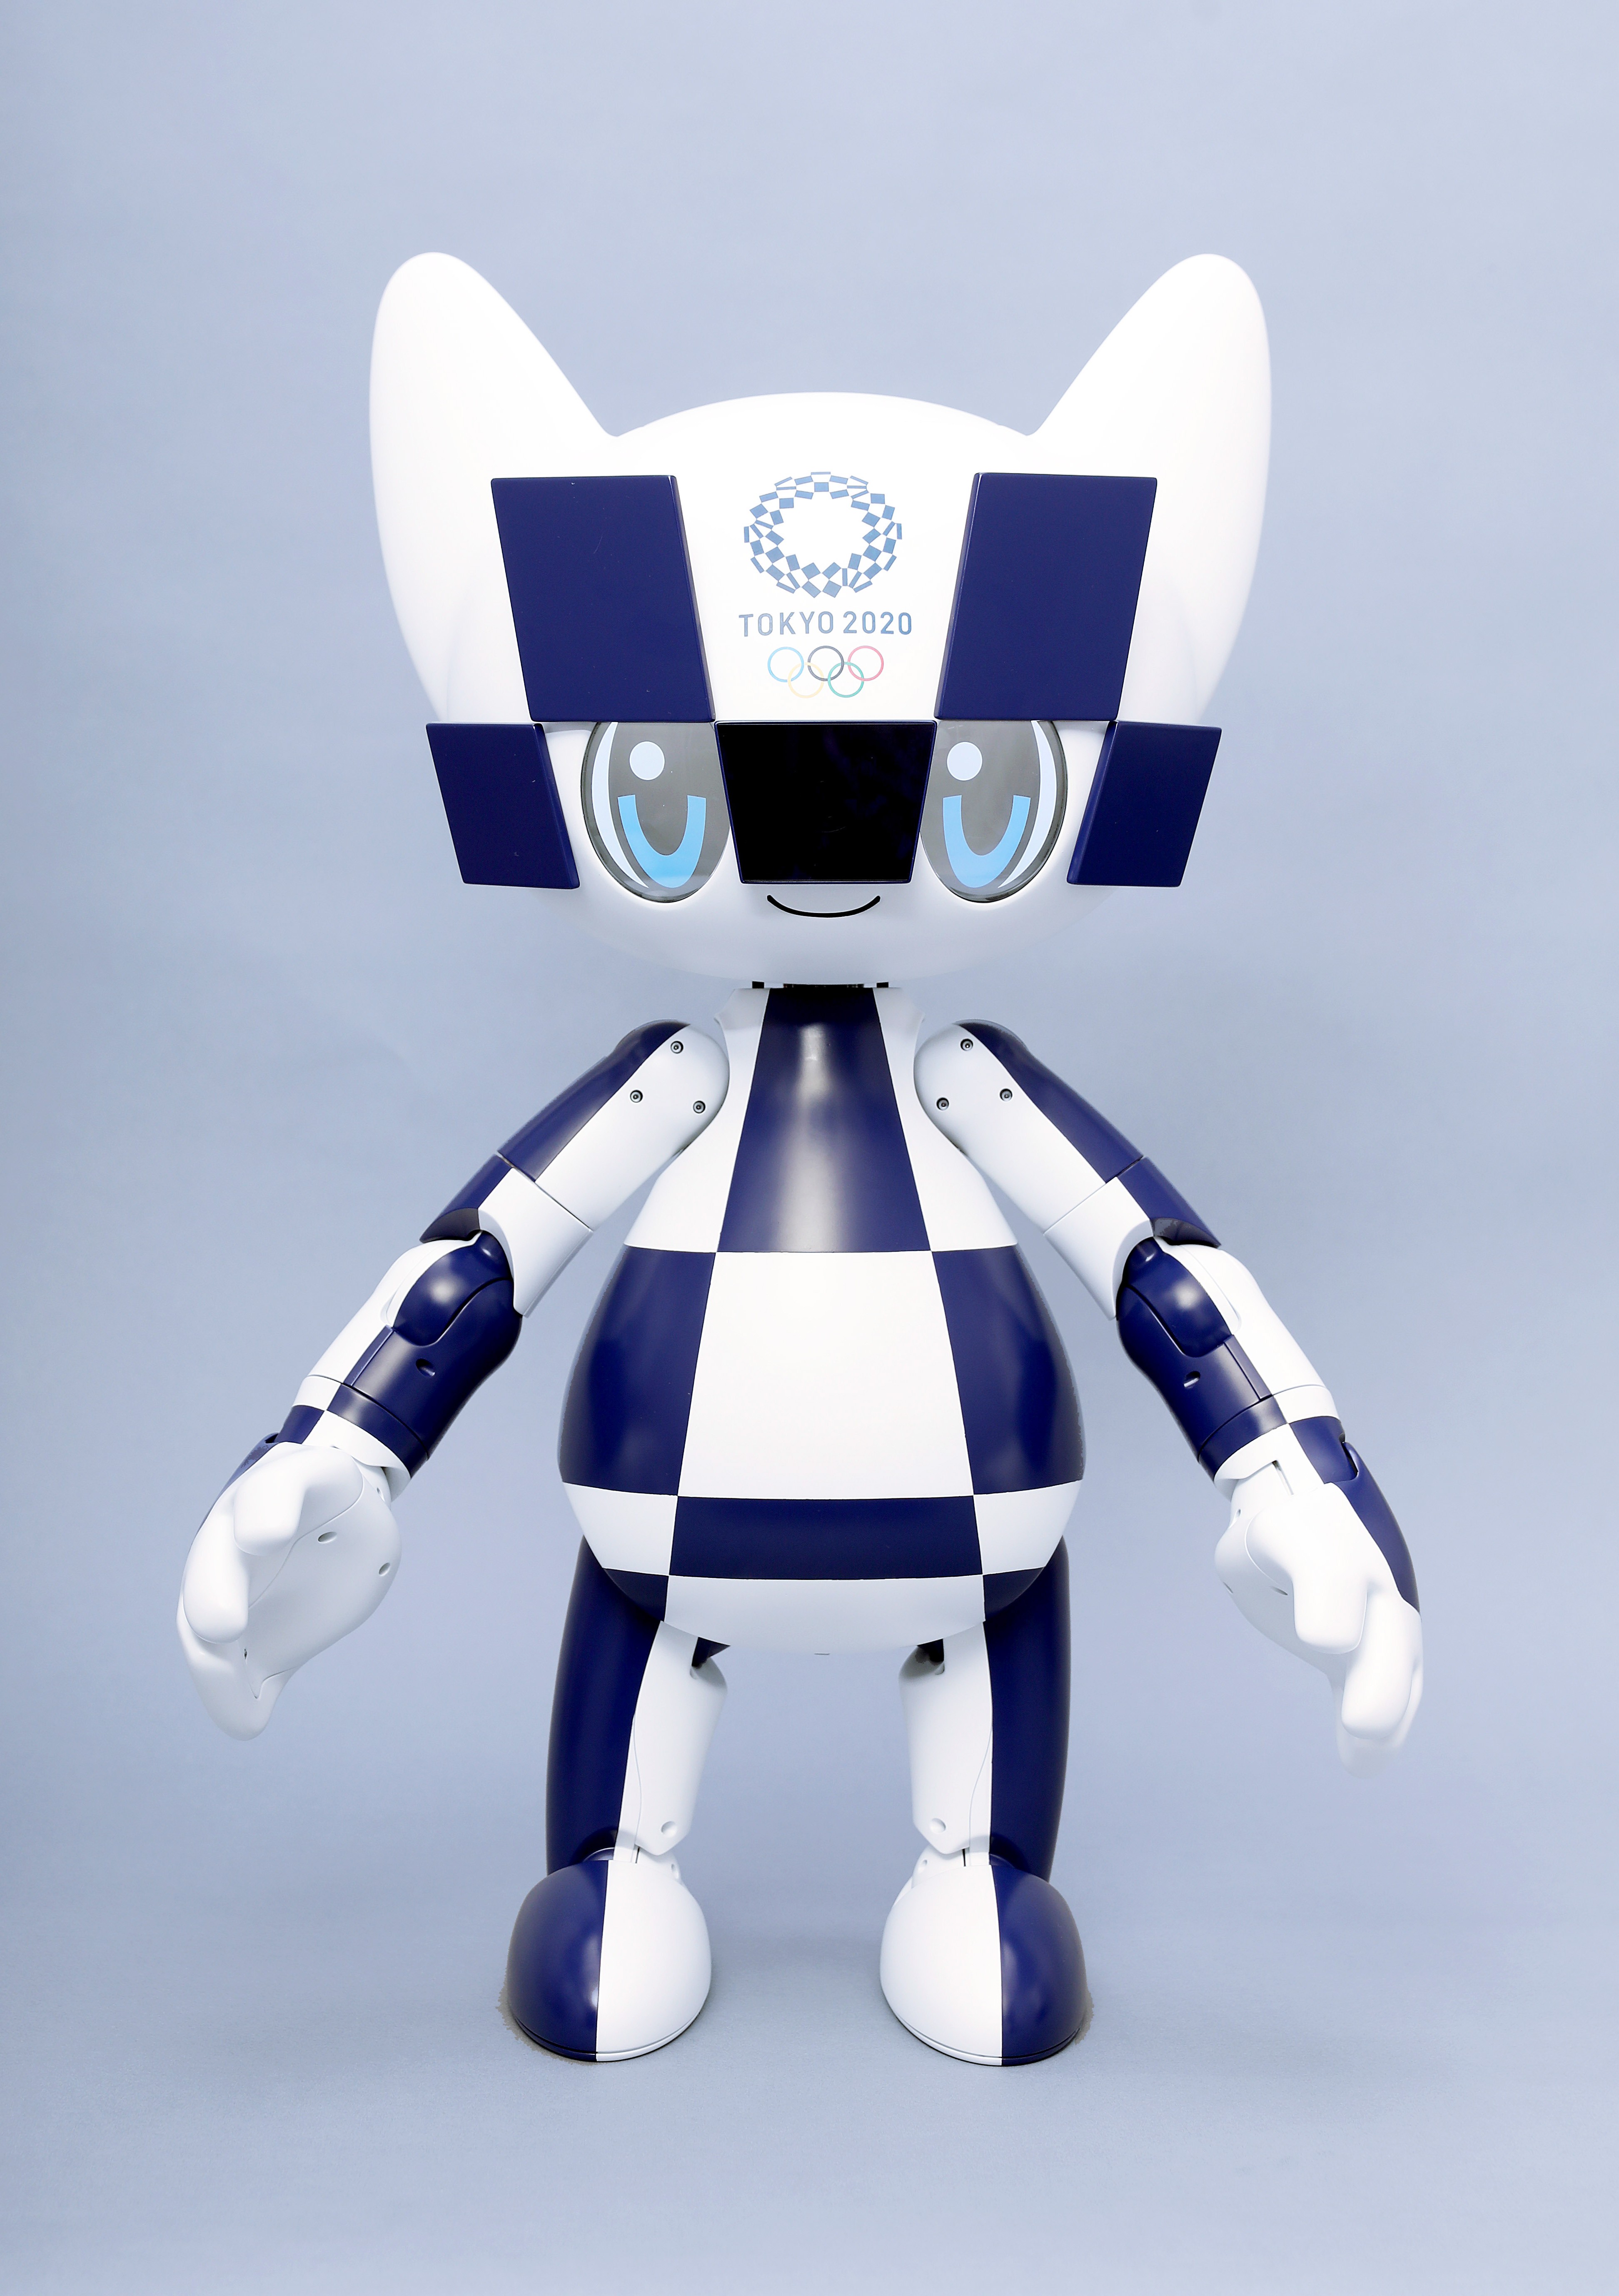 Toyota apresenta os robôs que estarão nas Olimpíadas e Paralimpíadas de Tóquio 2020  (Foto: Divulgação)